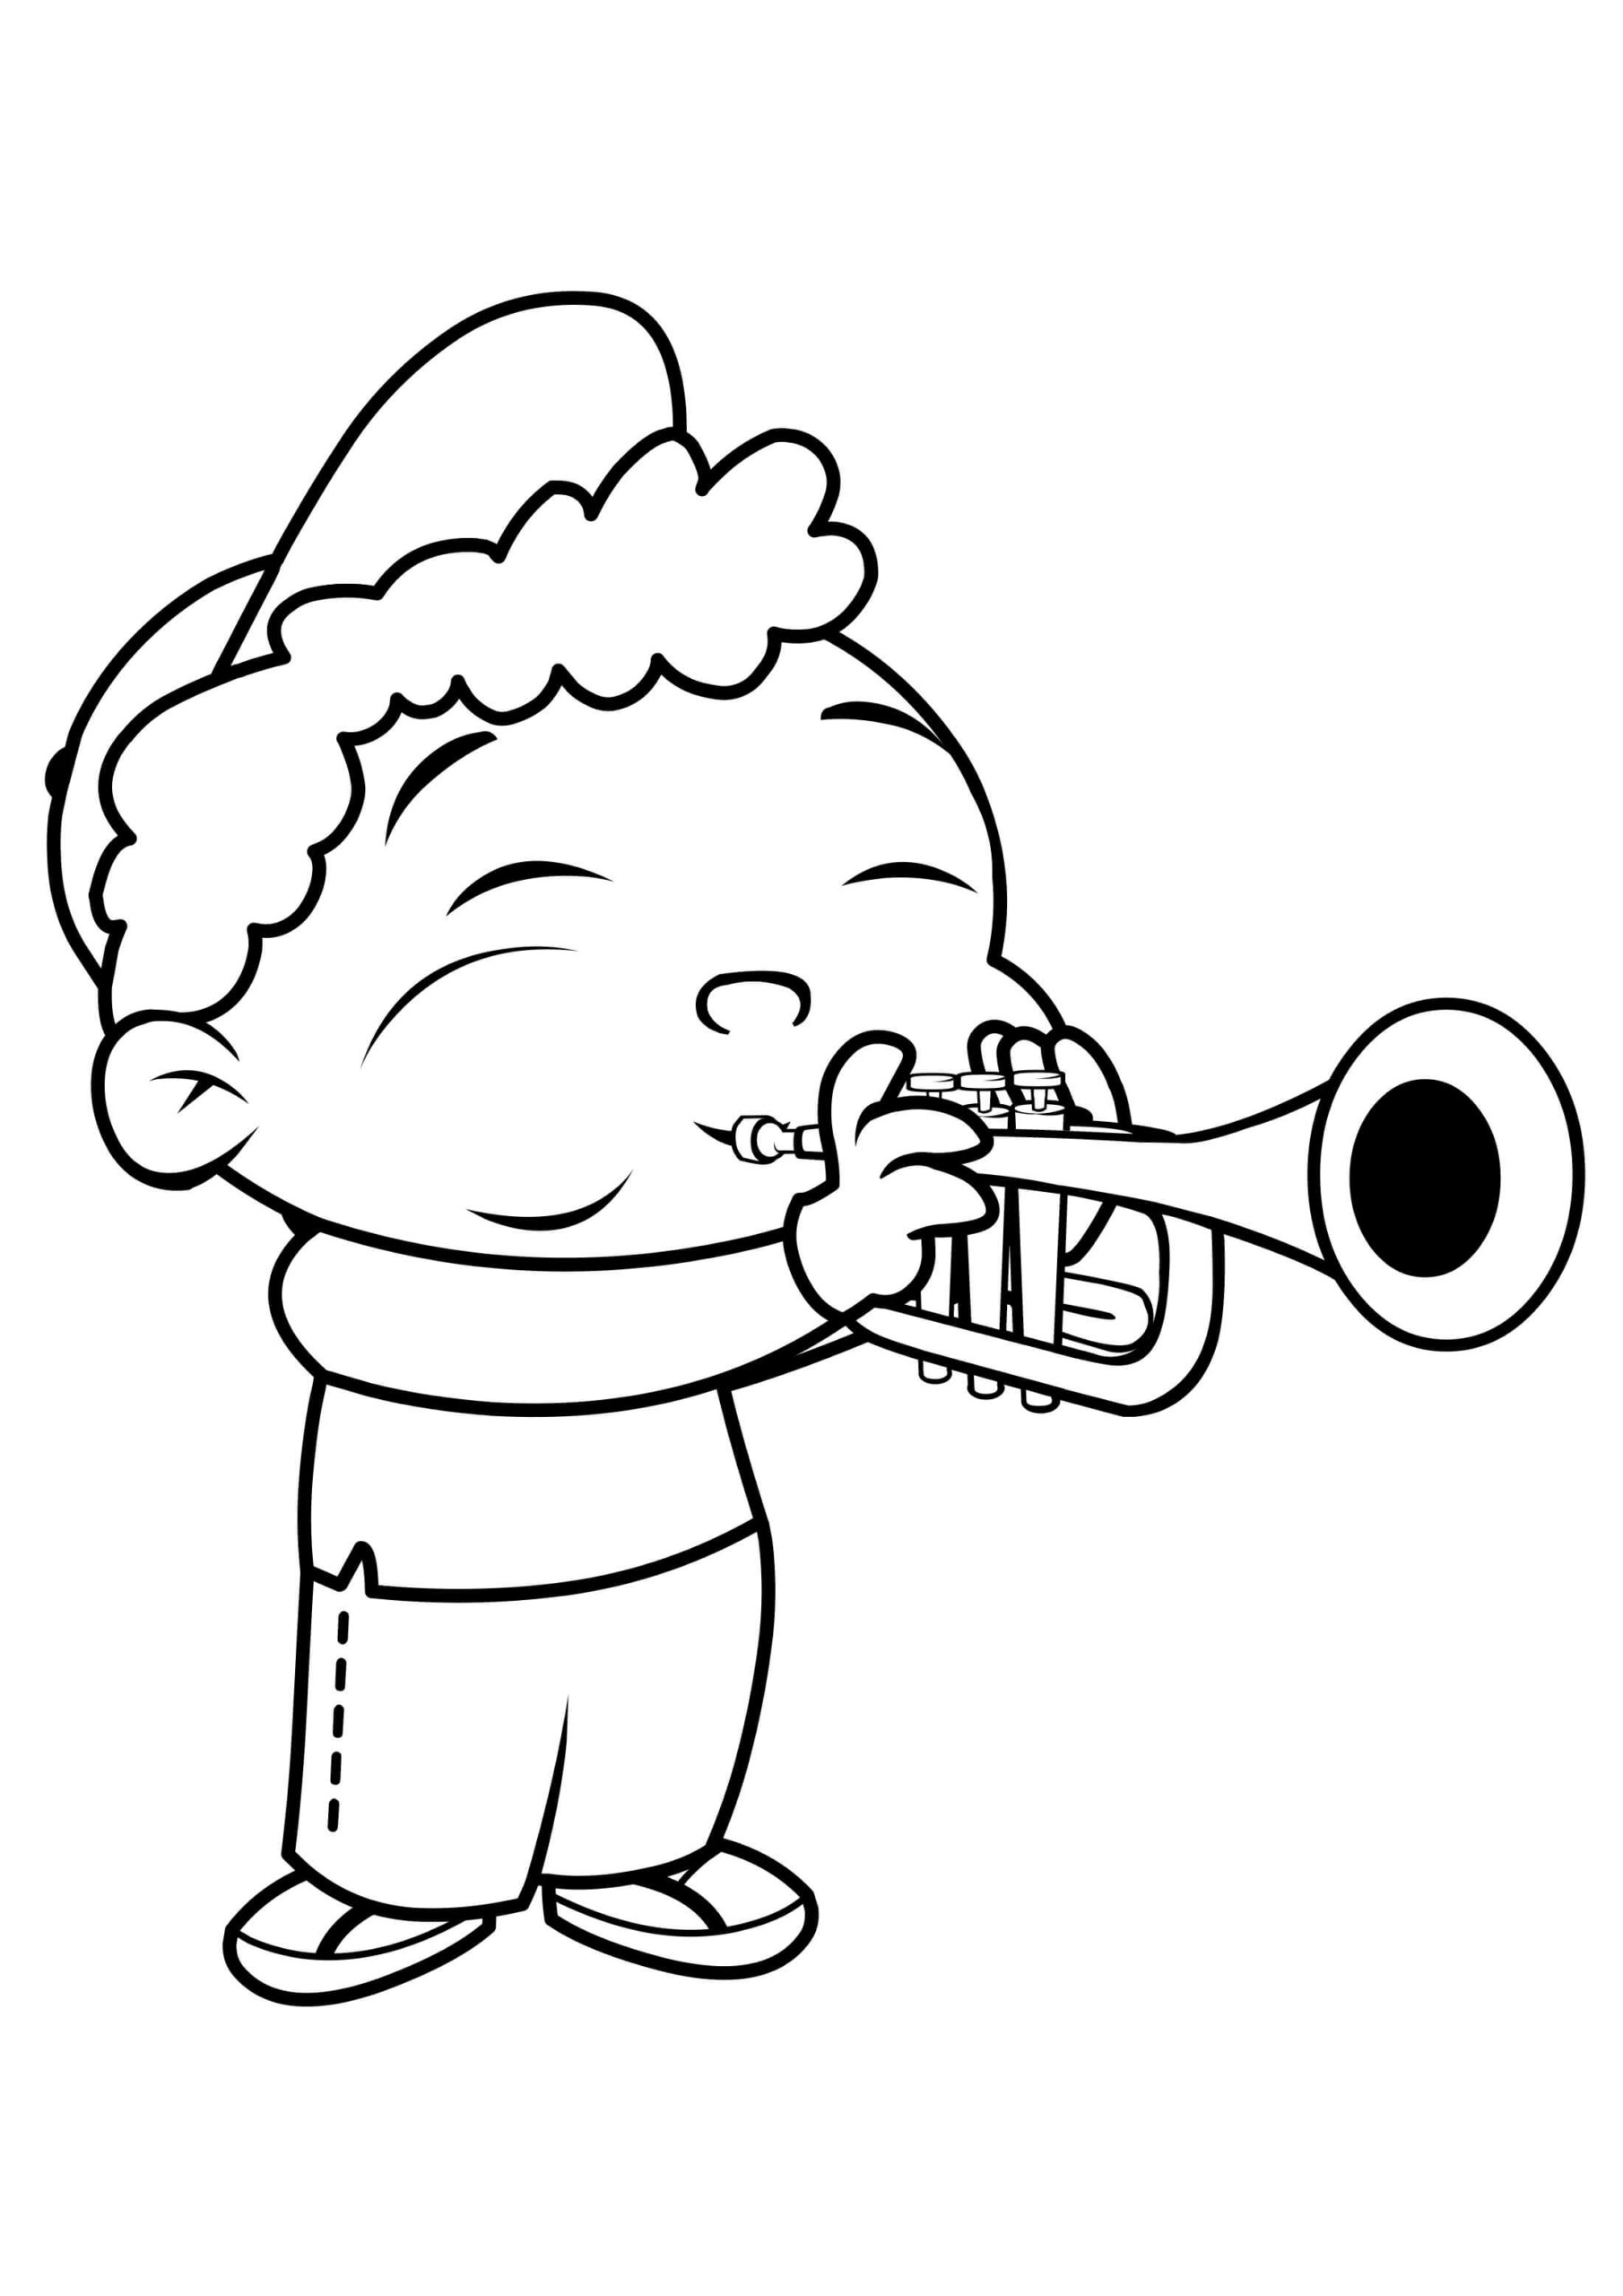 Quincy Joue de La Trompette coloring page